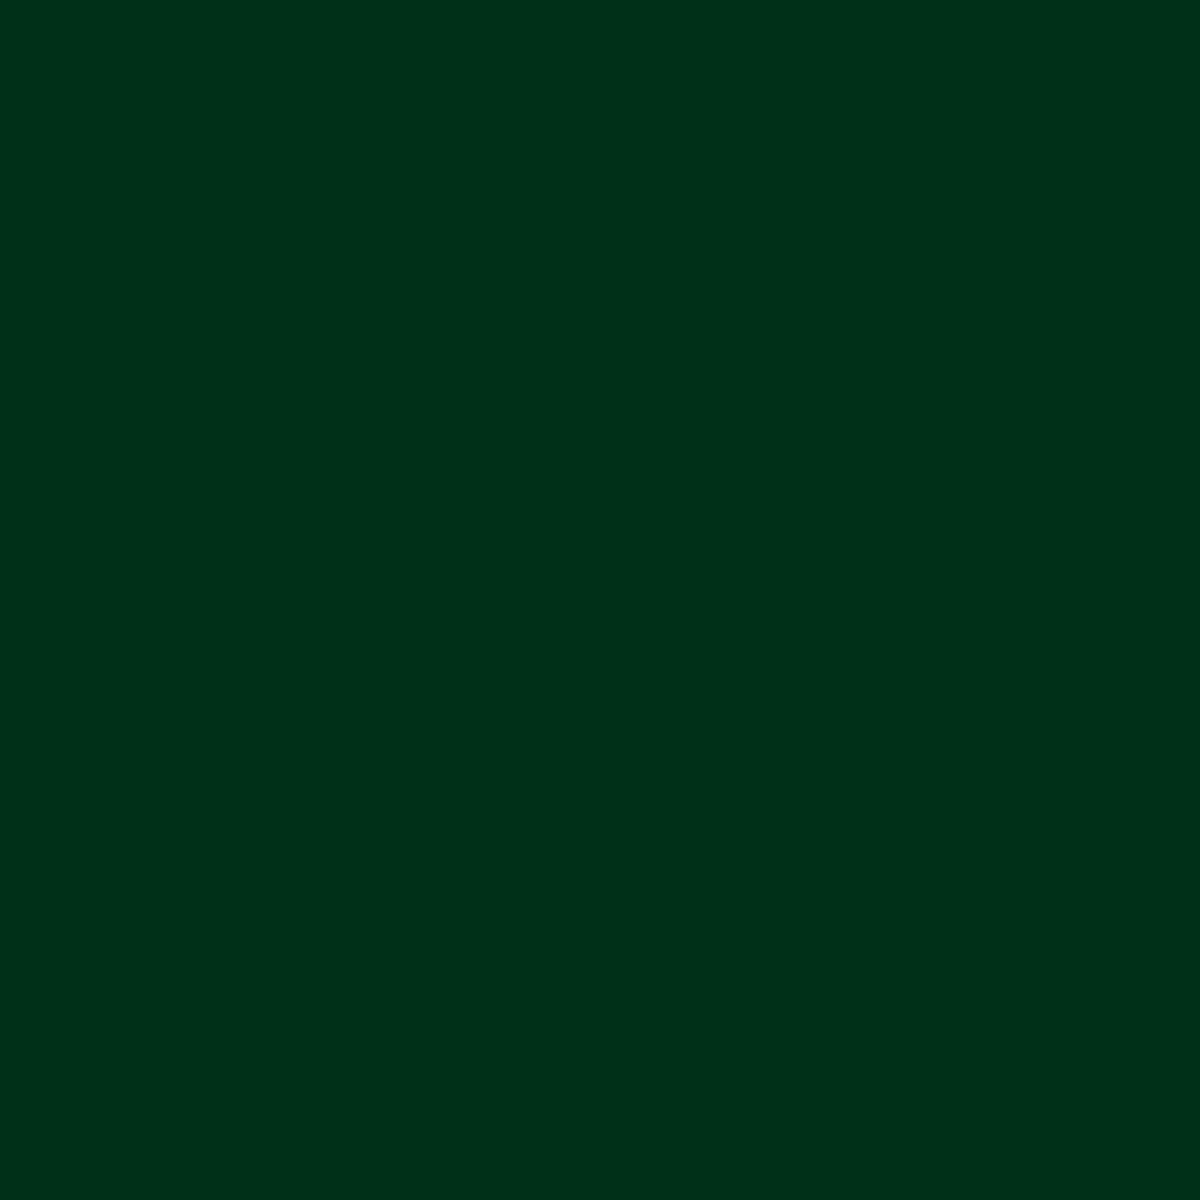 3M Film couleur 100-008 vert grenouille 1,22m x 25m